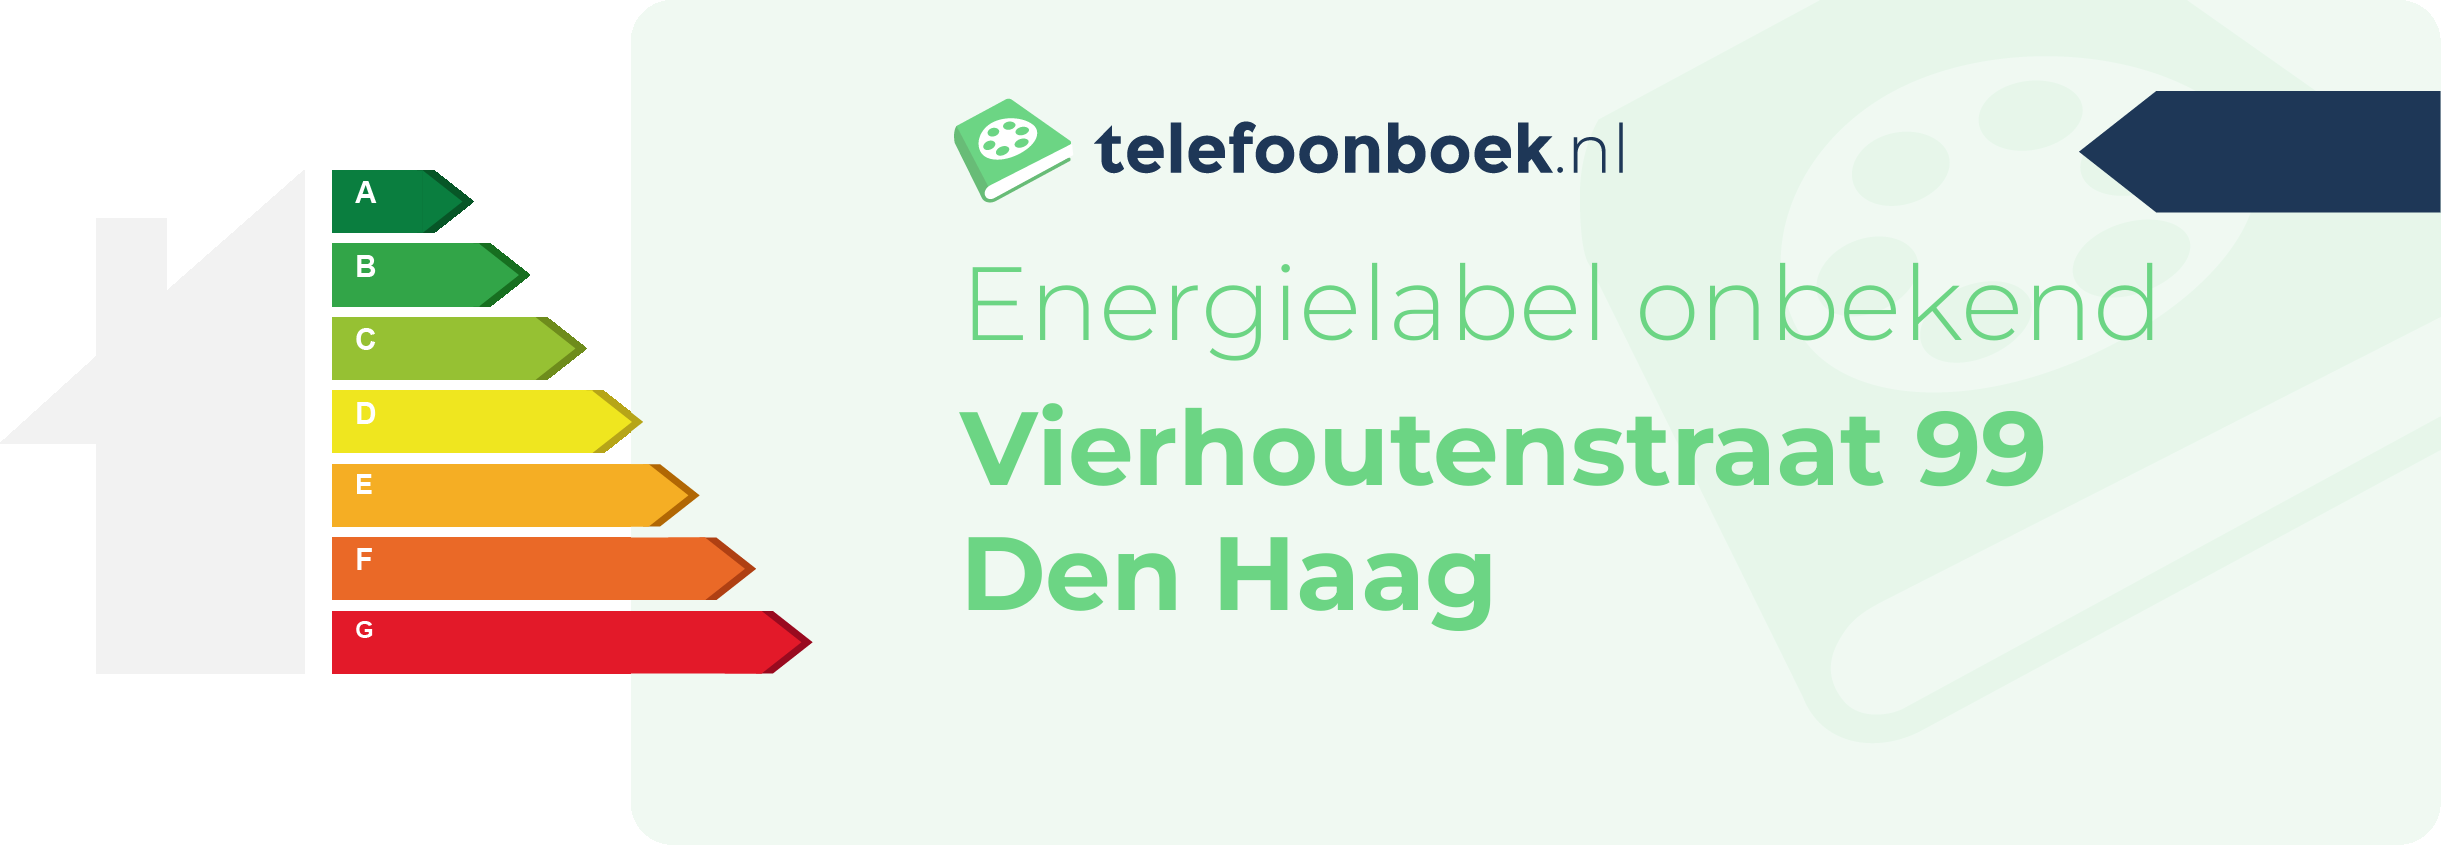 Energielabel Vierhoutenstraat 99 Den Haag